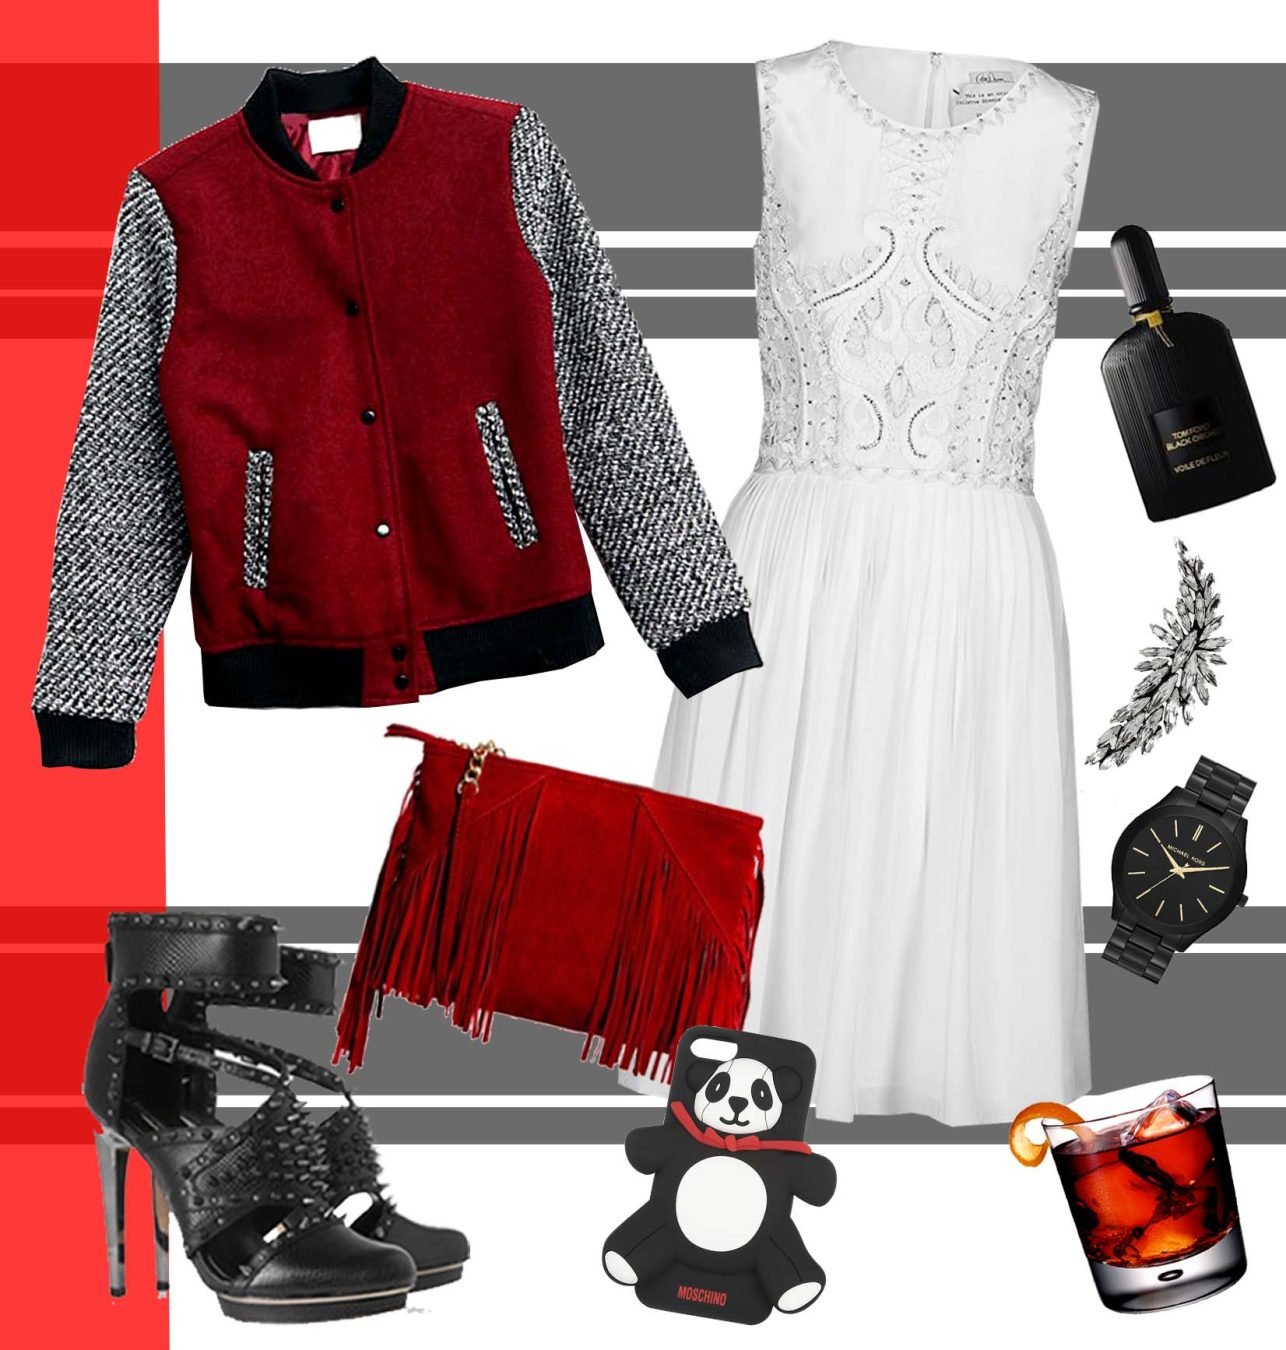 La nostra stilista e fashion designer Rossella Cannone ci parla delle tendenze moda del rosso, proponendo tre look total red per outfits pieni di colore